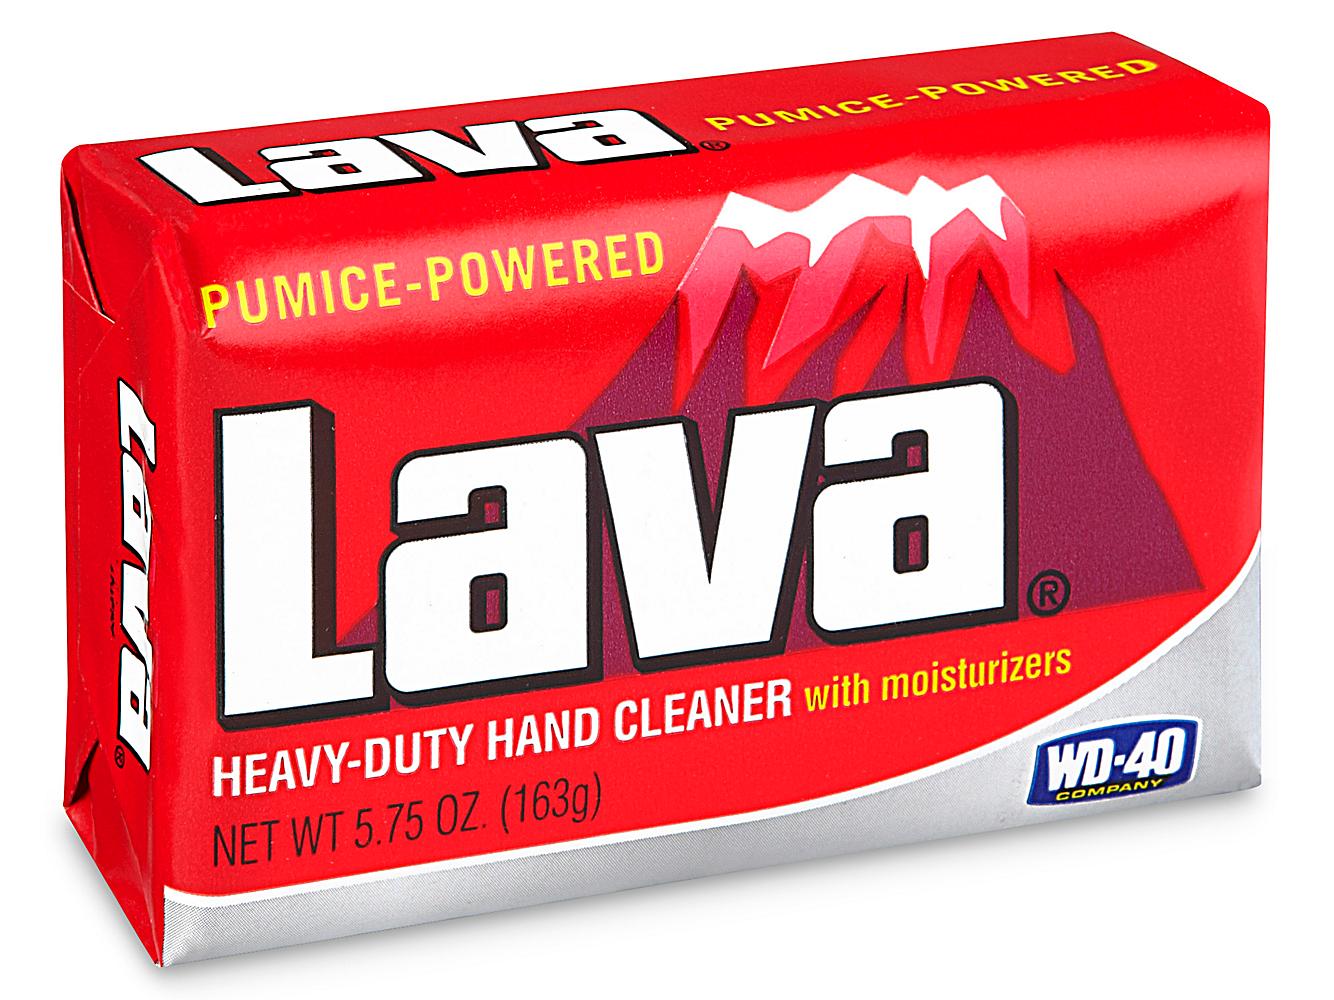 Lava® Bar Soap